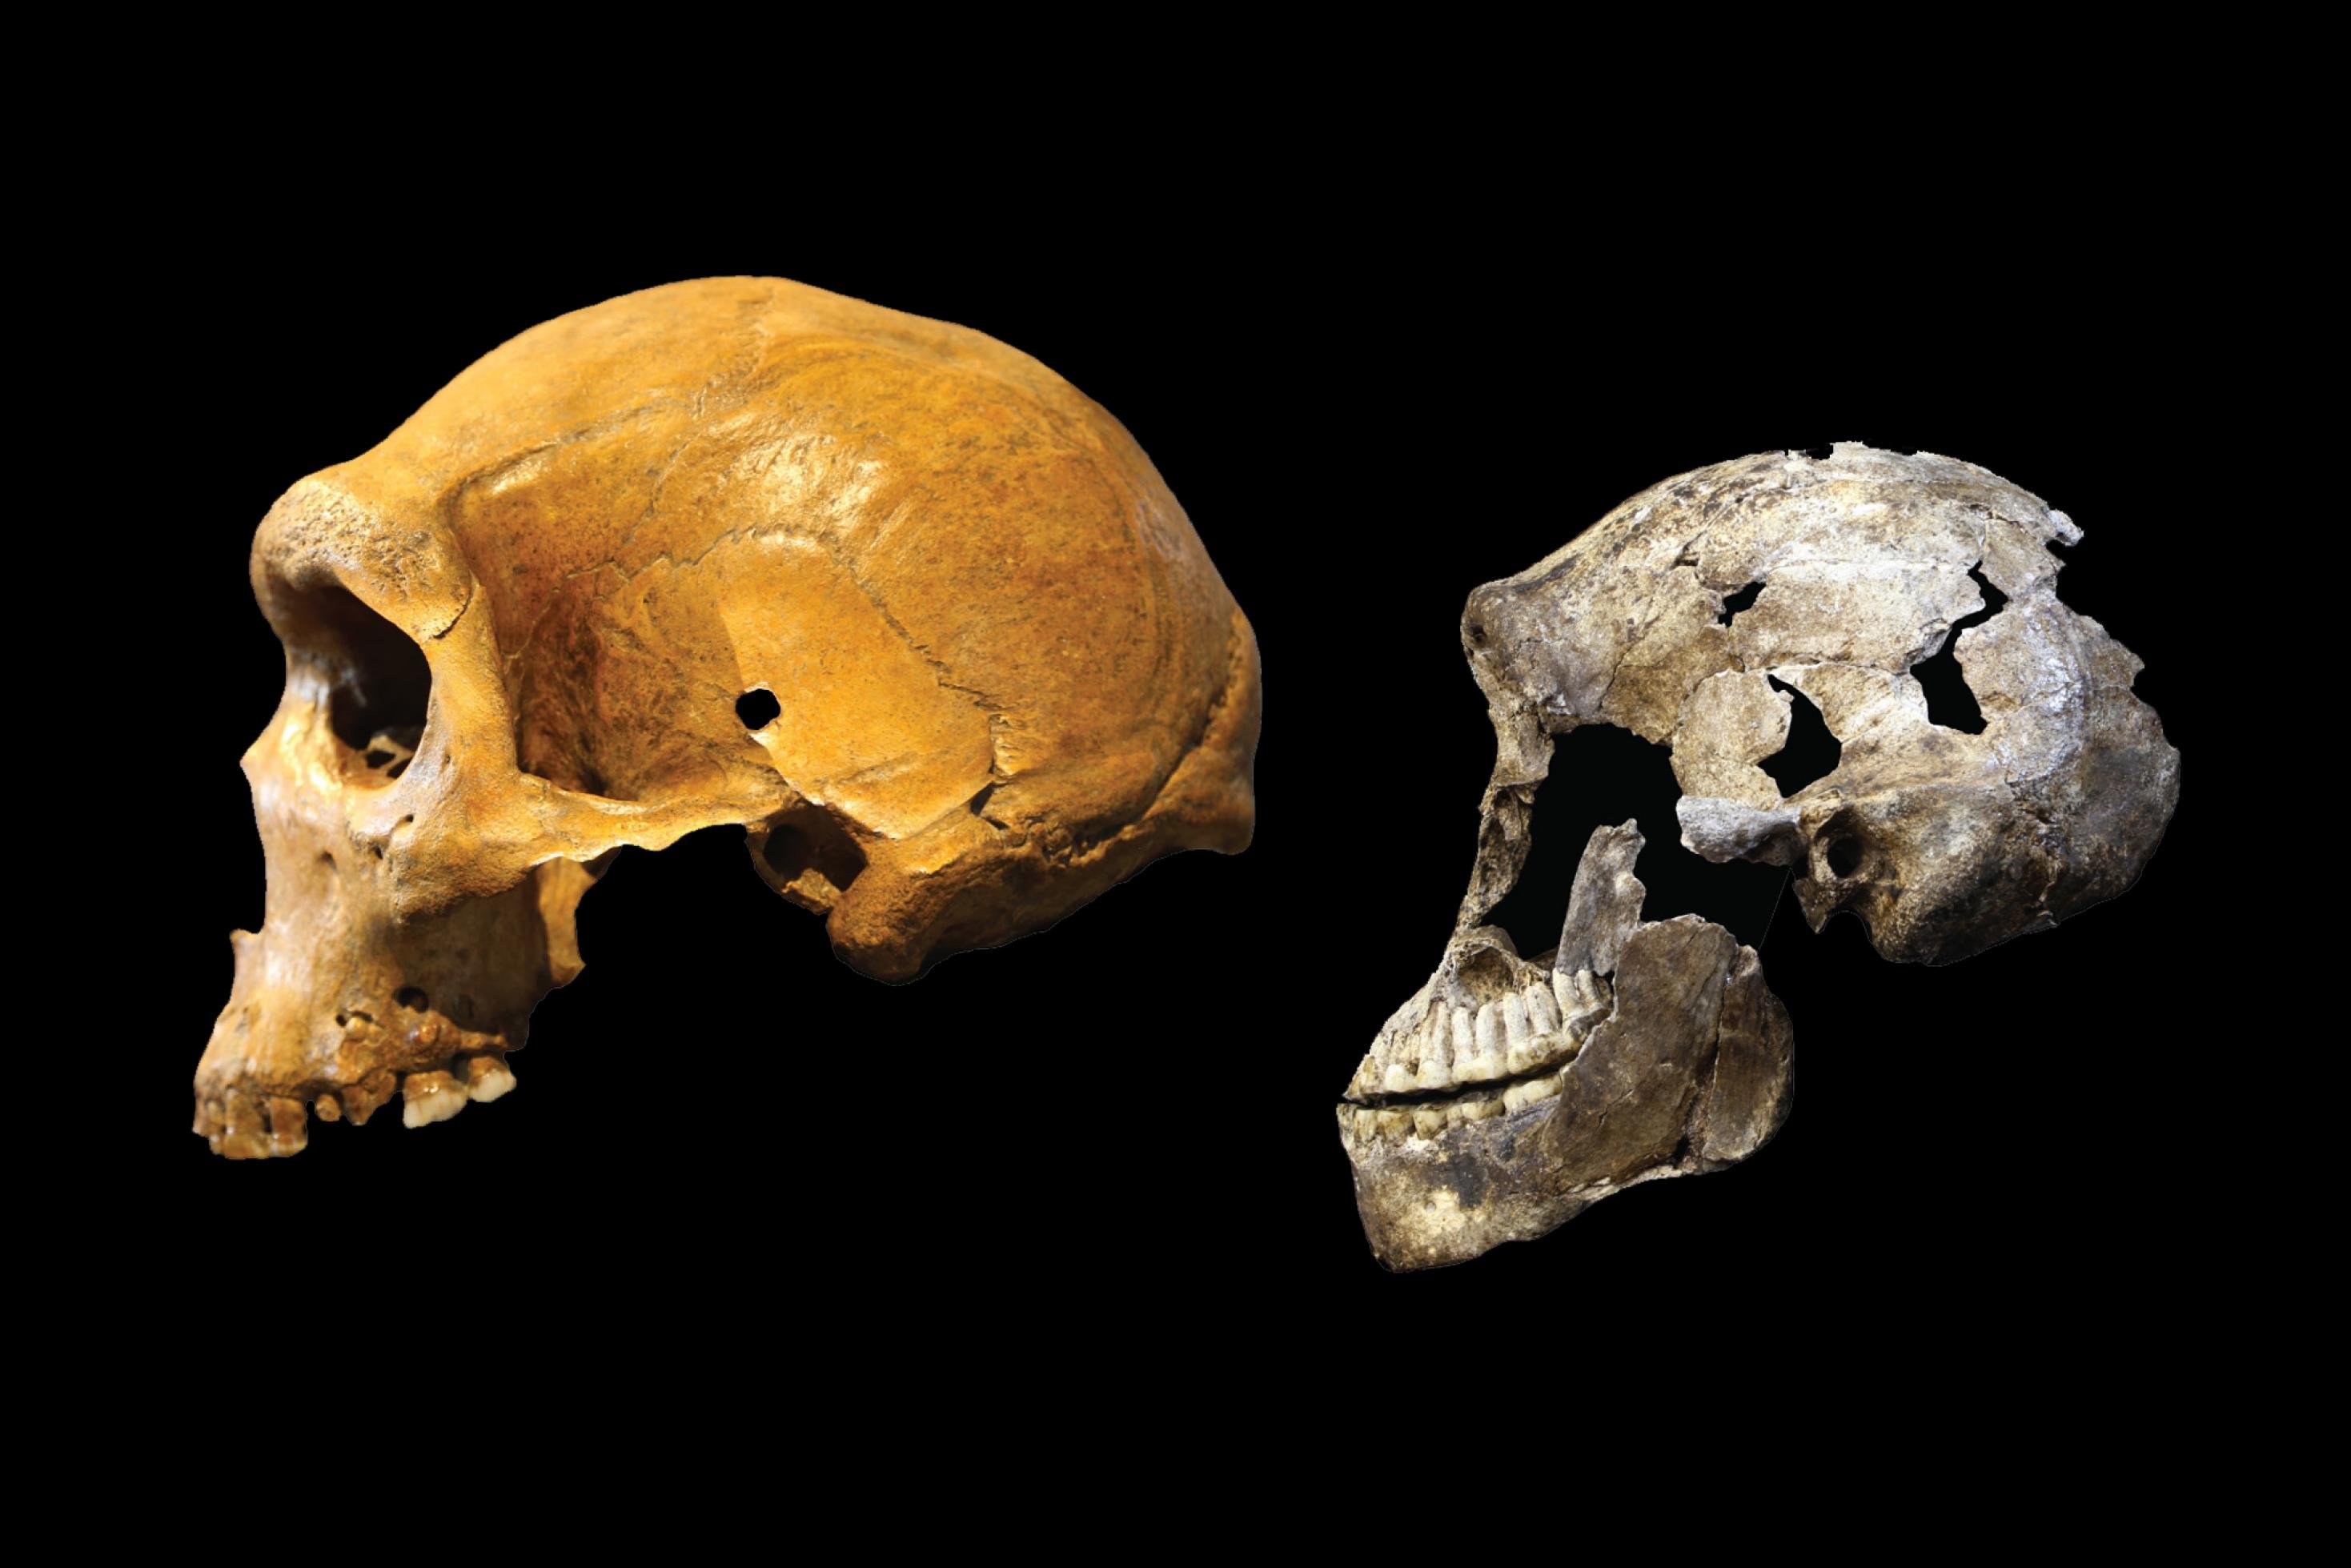 Zu sehen sind die seitlichen Ansichten eines Schädels von Homo naledi und eines Schädels von Homo heidelbergensis. Beide Menschenarten lebten zur gleichen Zeit in Afrika und sind doch sehr unterschiedlich: Der Schädel von Homo naledi ist kleiner und wirkt primitiver. Das Hirnvolumen von Homo heidelbergensis ist dagegen schon fast so groß wie das vom Homo sapiens, dessen Vorgänger er vermutlich ist.